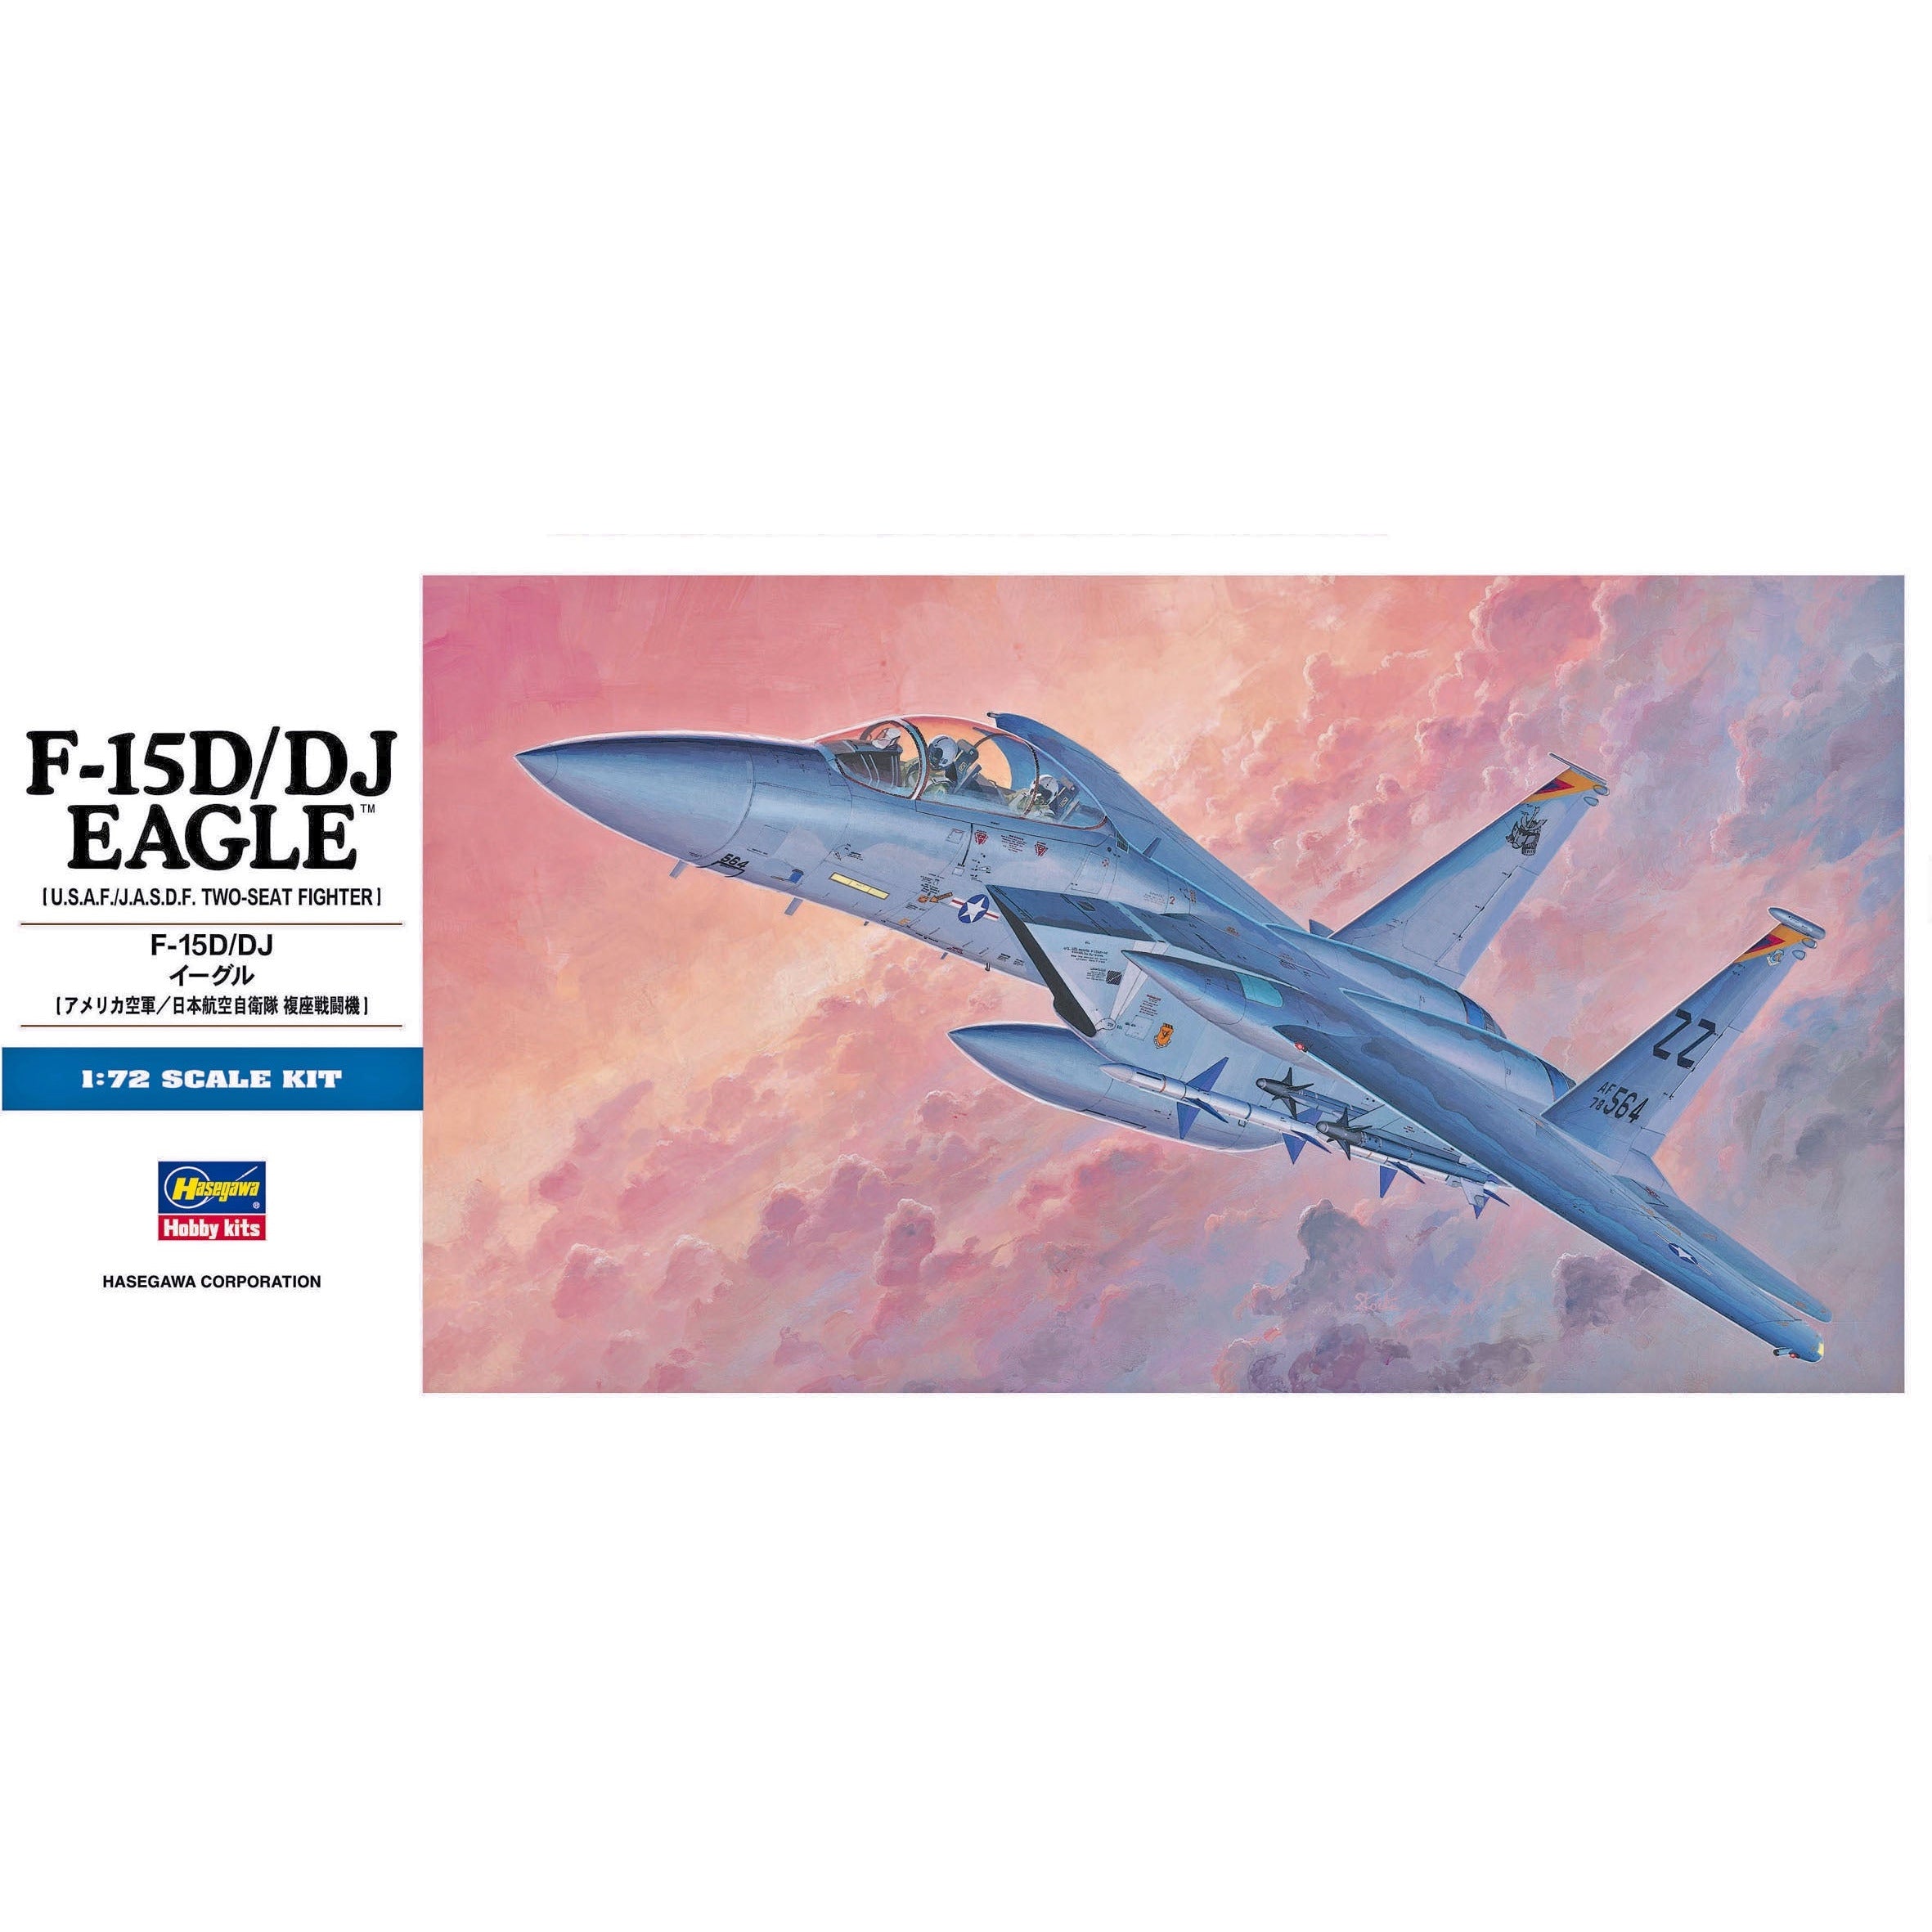 F-15D/DJ Eagle 1/72 #00435 by Hasegawa